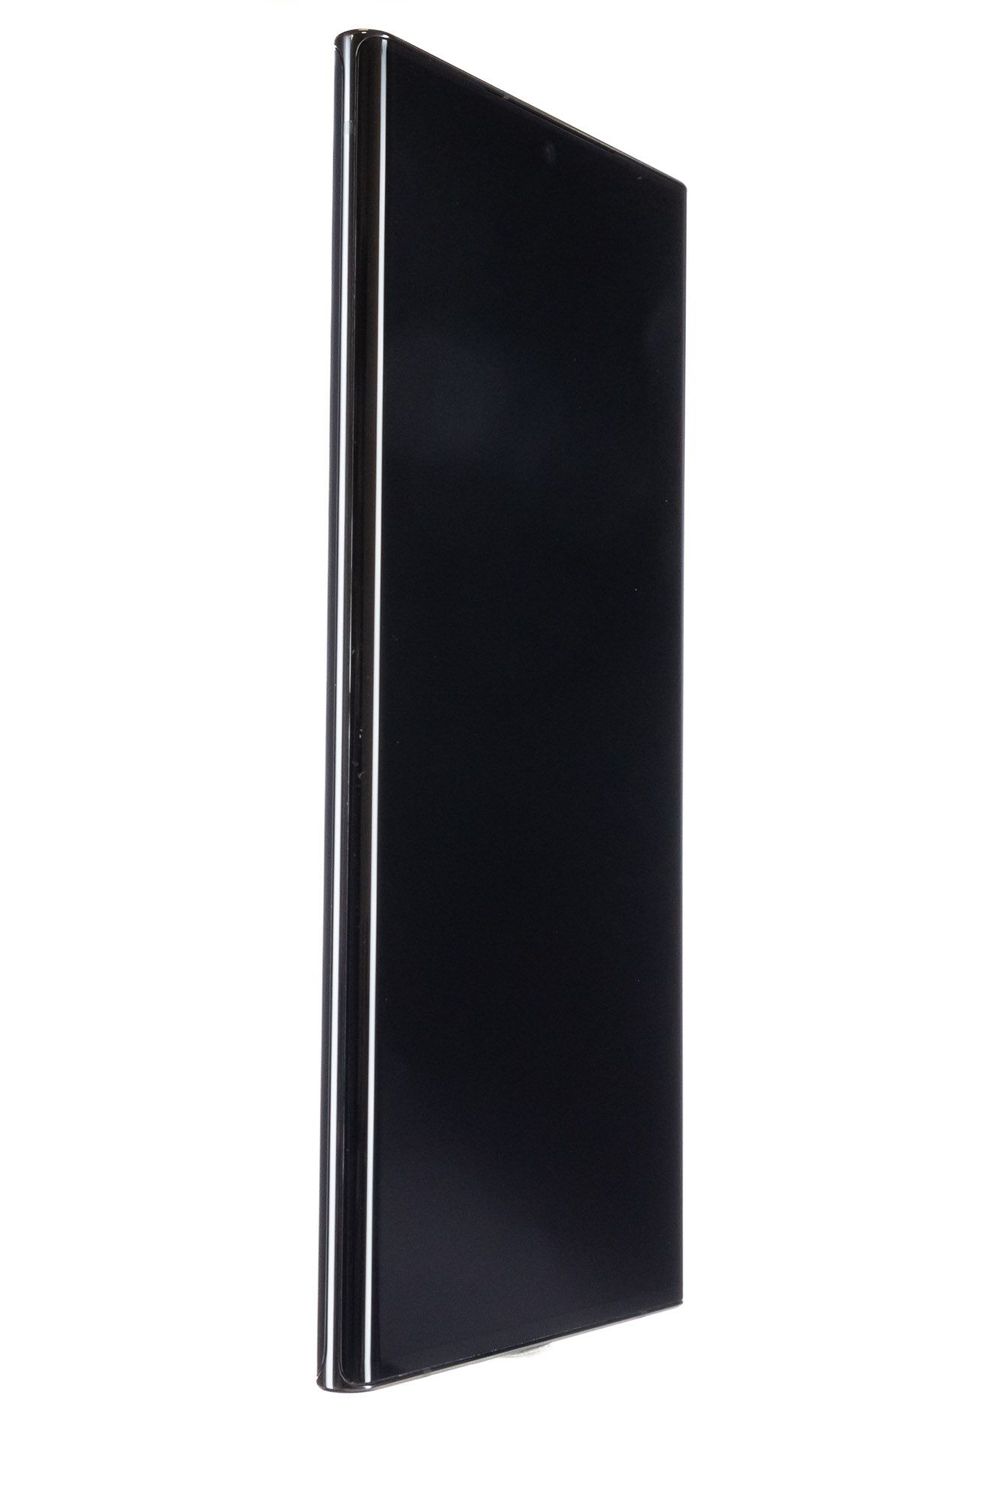 Κινητό τηλέφωνο Samsung Galaxy Note 20 Ultra Dual Sim, Black, 128 GB, Bun